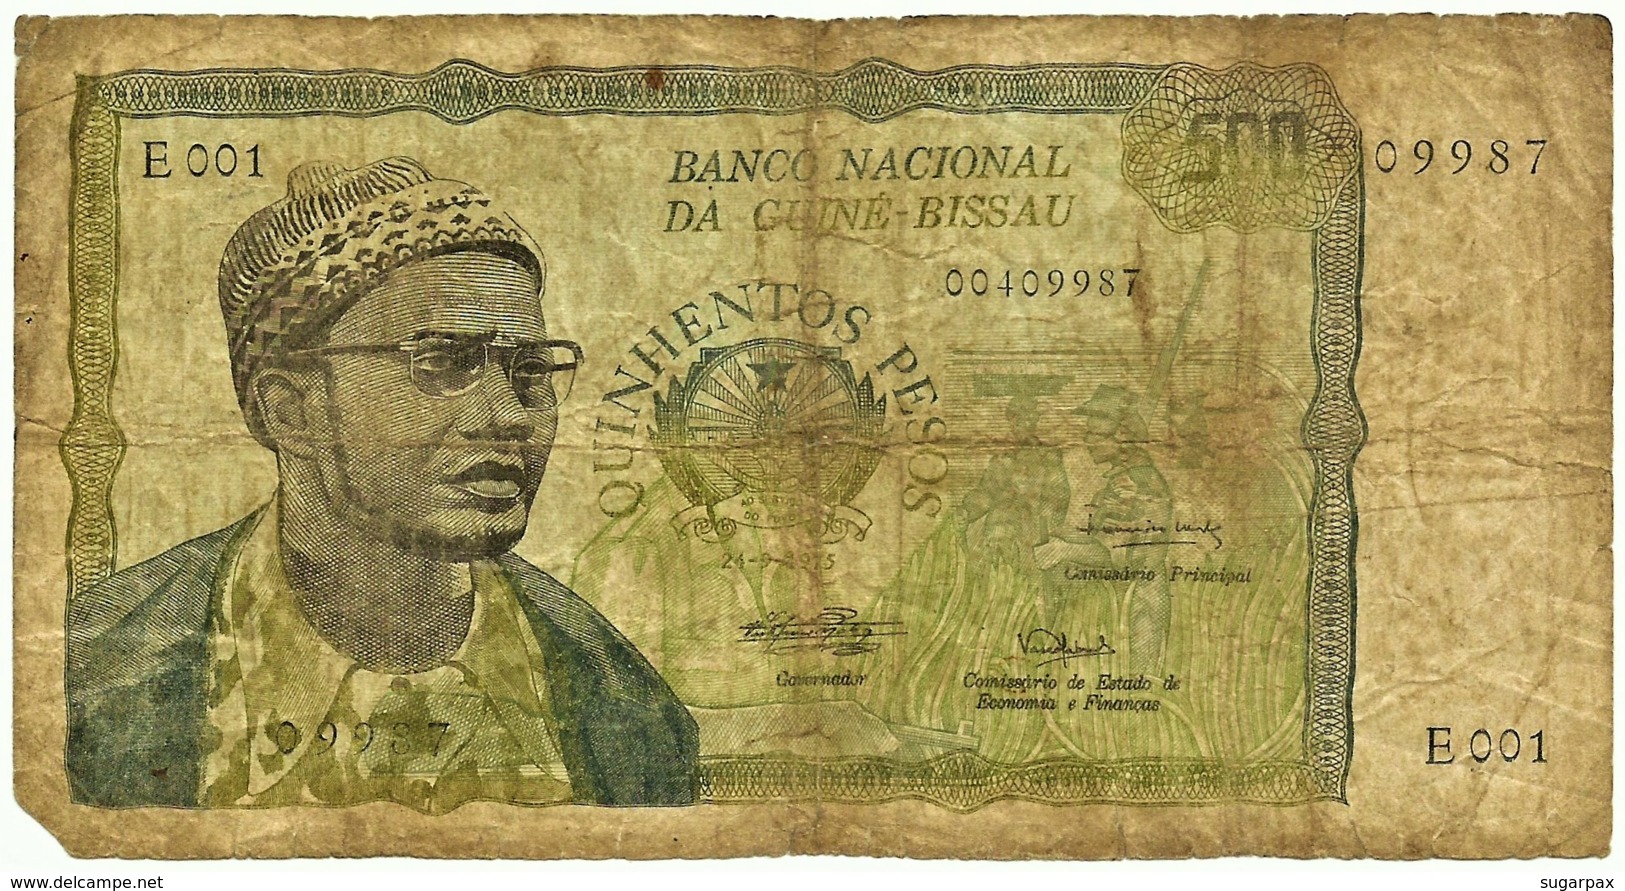 Guiné-Bissau - 500 Pesos - 24.09.1975 - P 3 - Very RARE - Serie E 001 - Presidente Amilcar Cabral - Guinee-Bissau